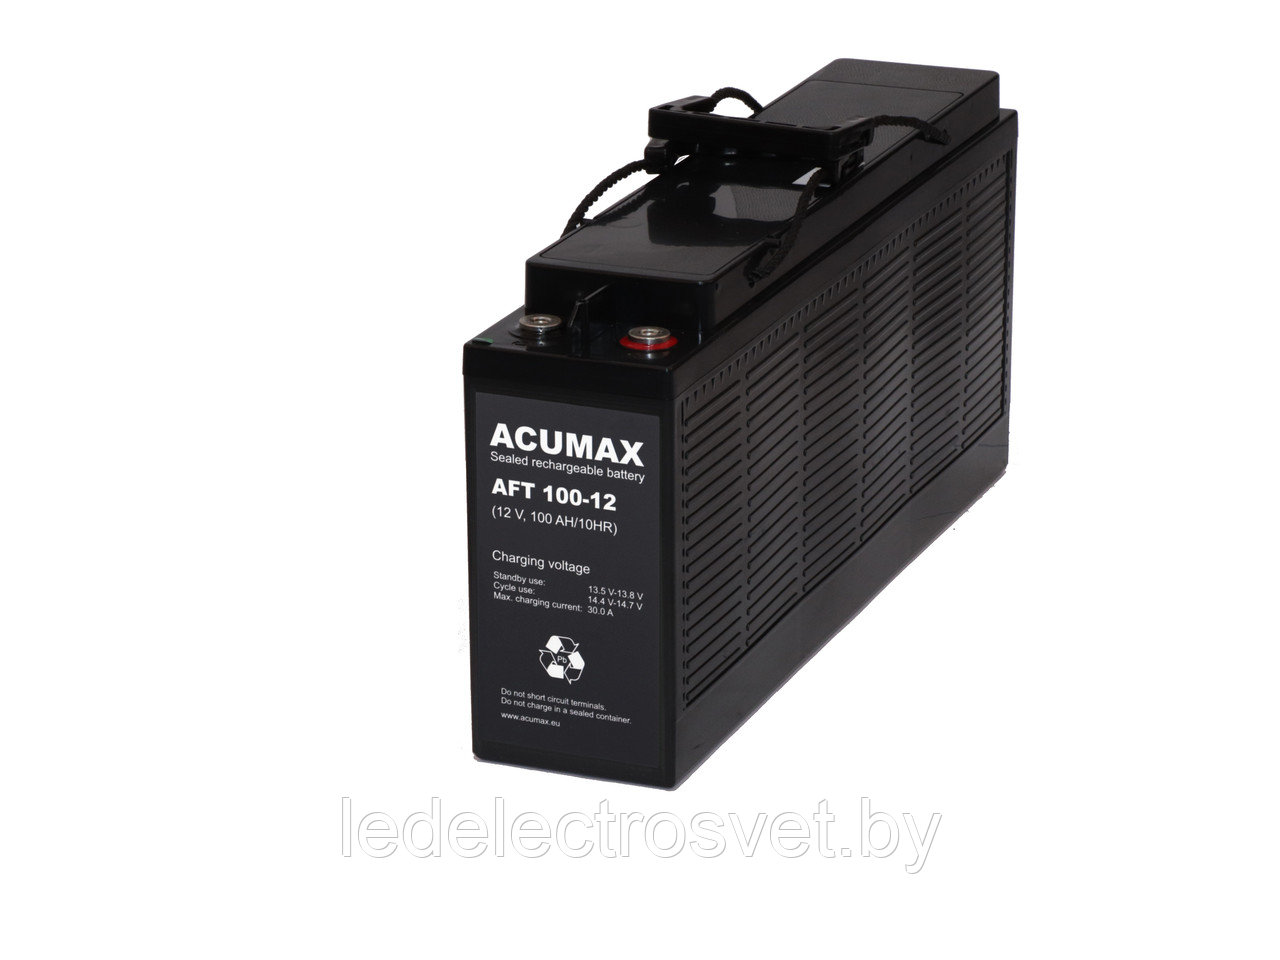 Батарея аккумуляторная Acumax AFT100-12, 12V/103Ah, 239x508x110 HxLxW, 35kg, 10-12лет